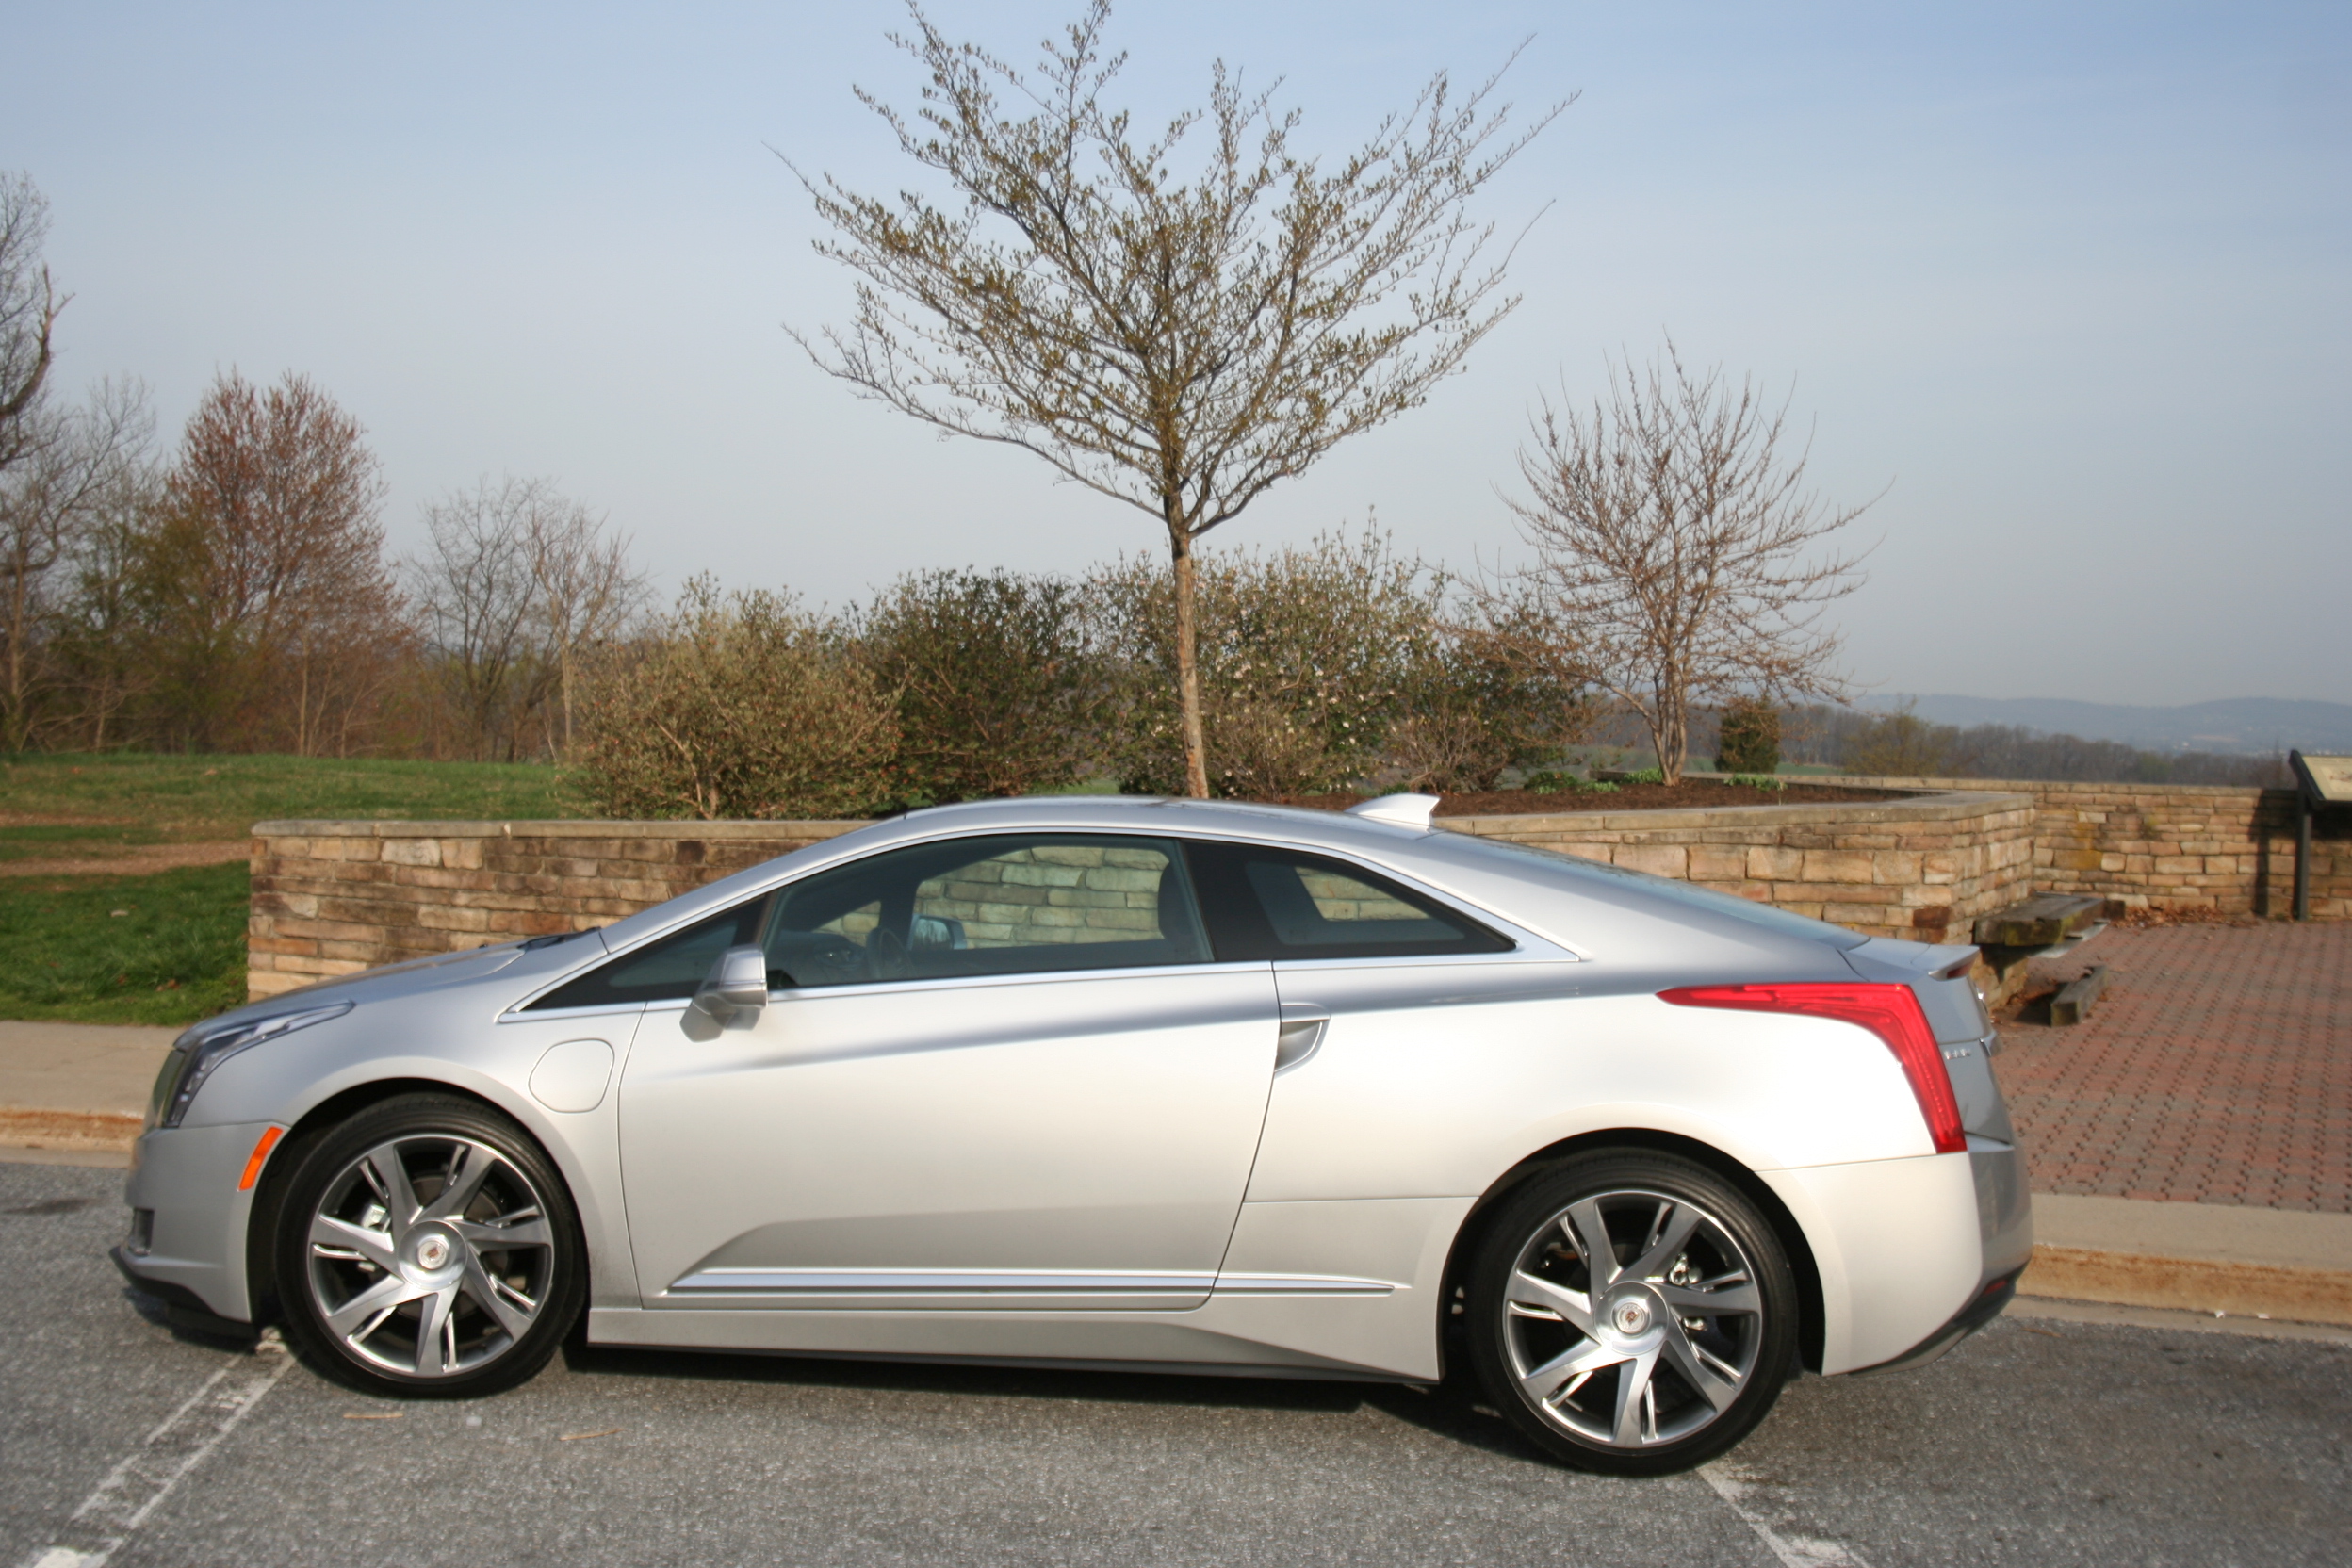 Car Report: Cadillac ELR is a head-turning hybrid